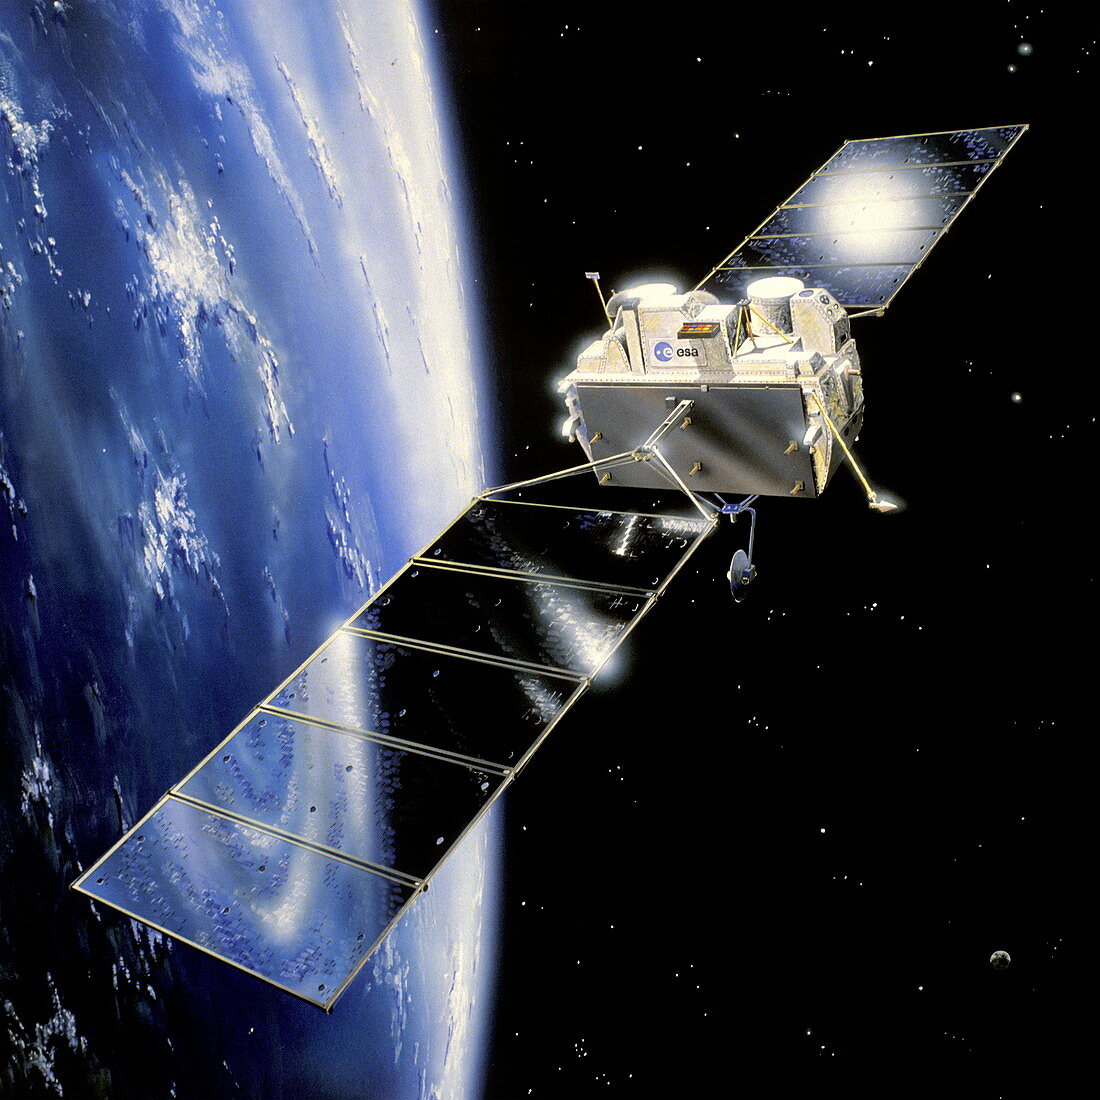 Eureca satellite